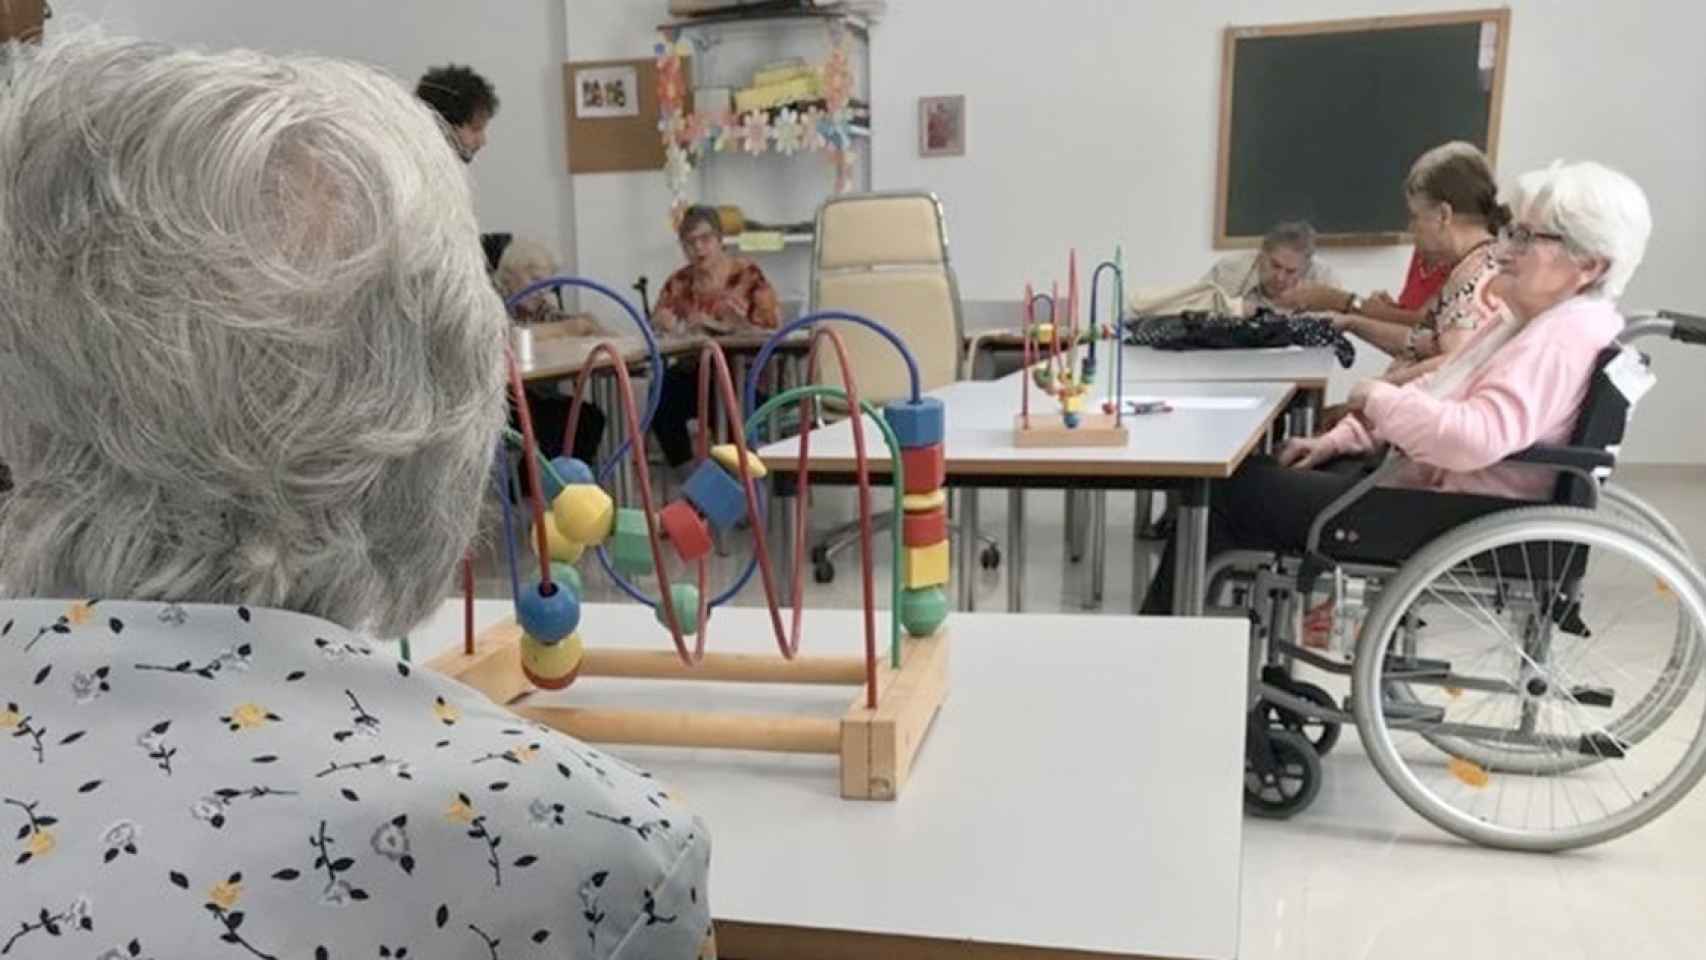 Centro de mayores con personas con dependencia / EUROPA PRESS